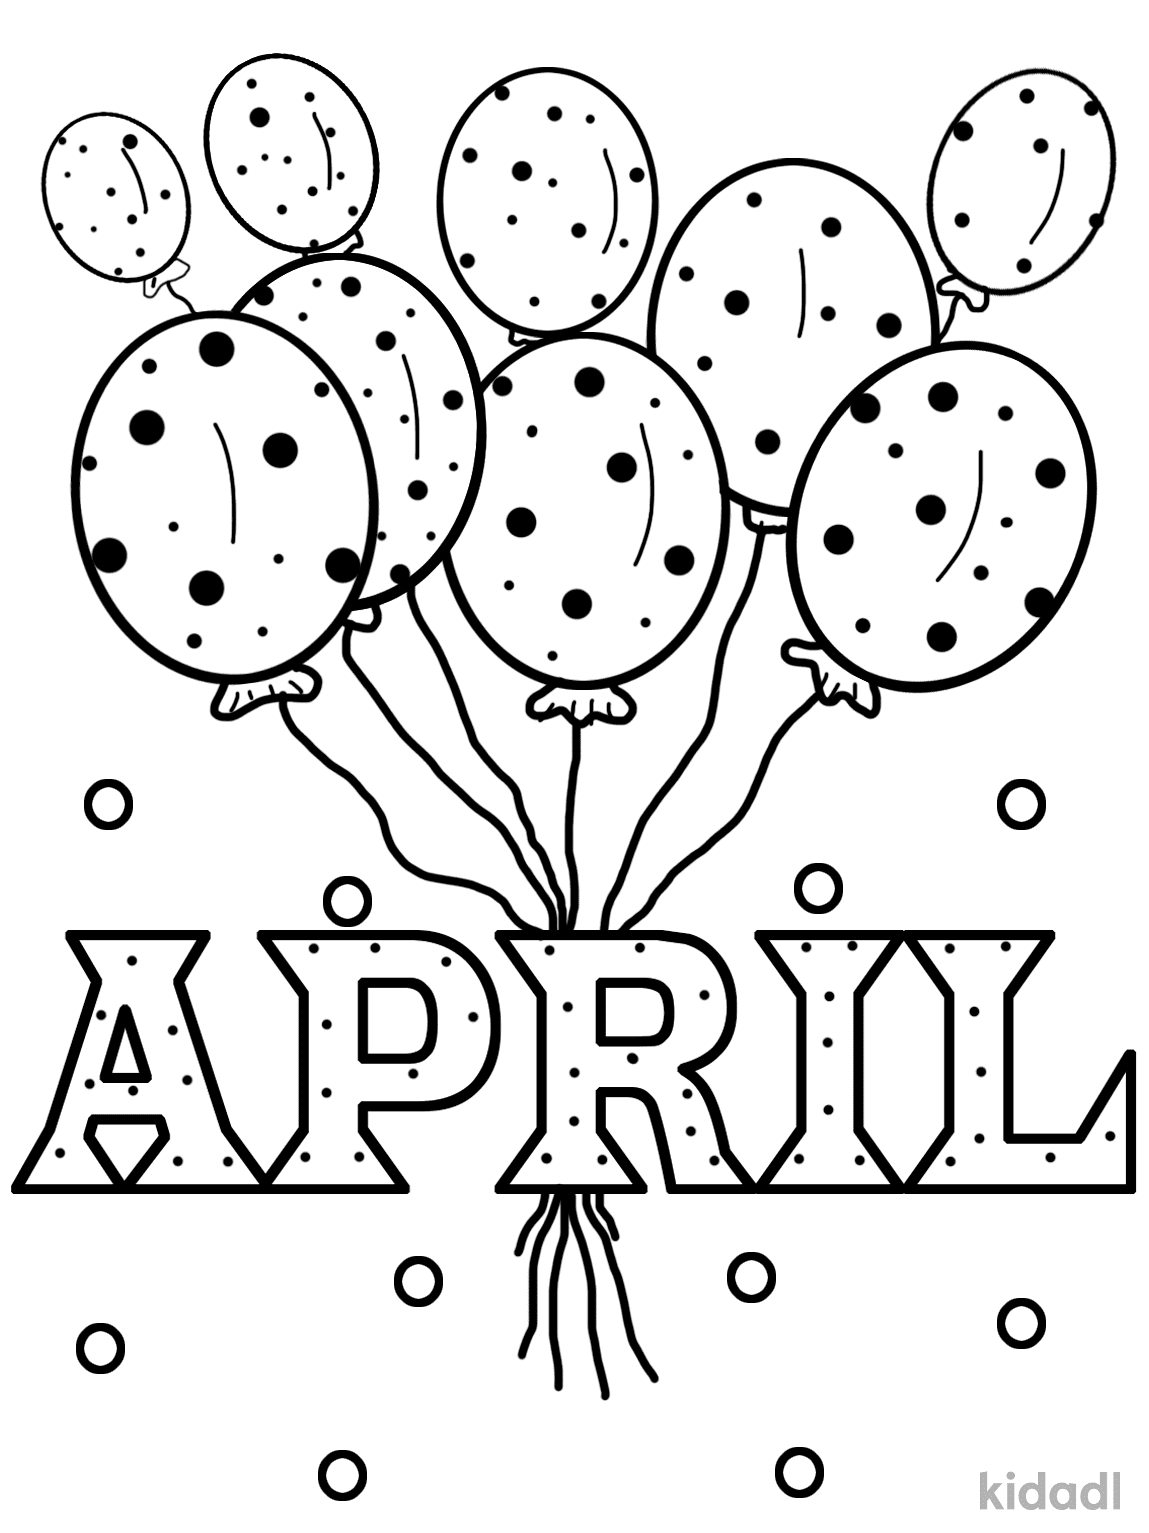 Gratis afdrukbare maand april kleurplaat